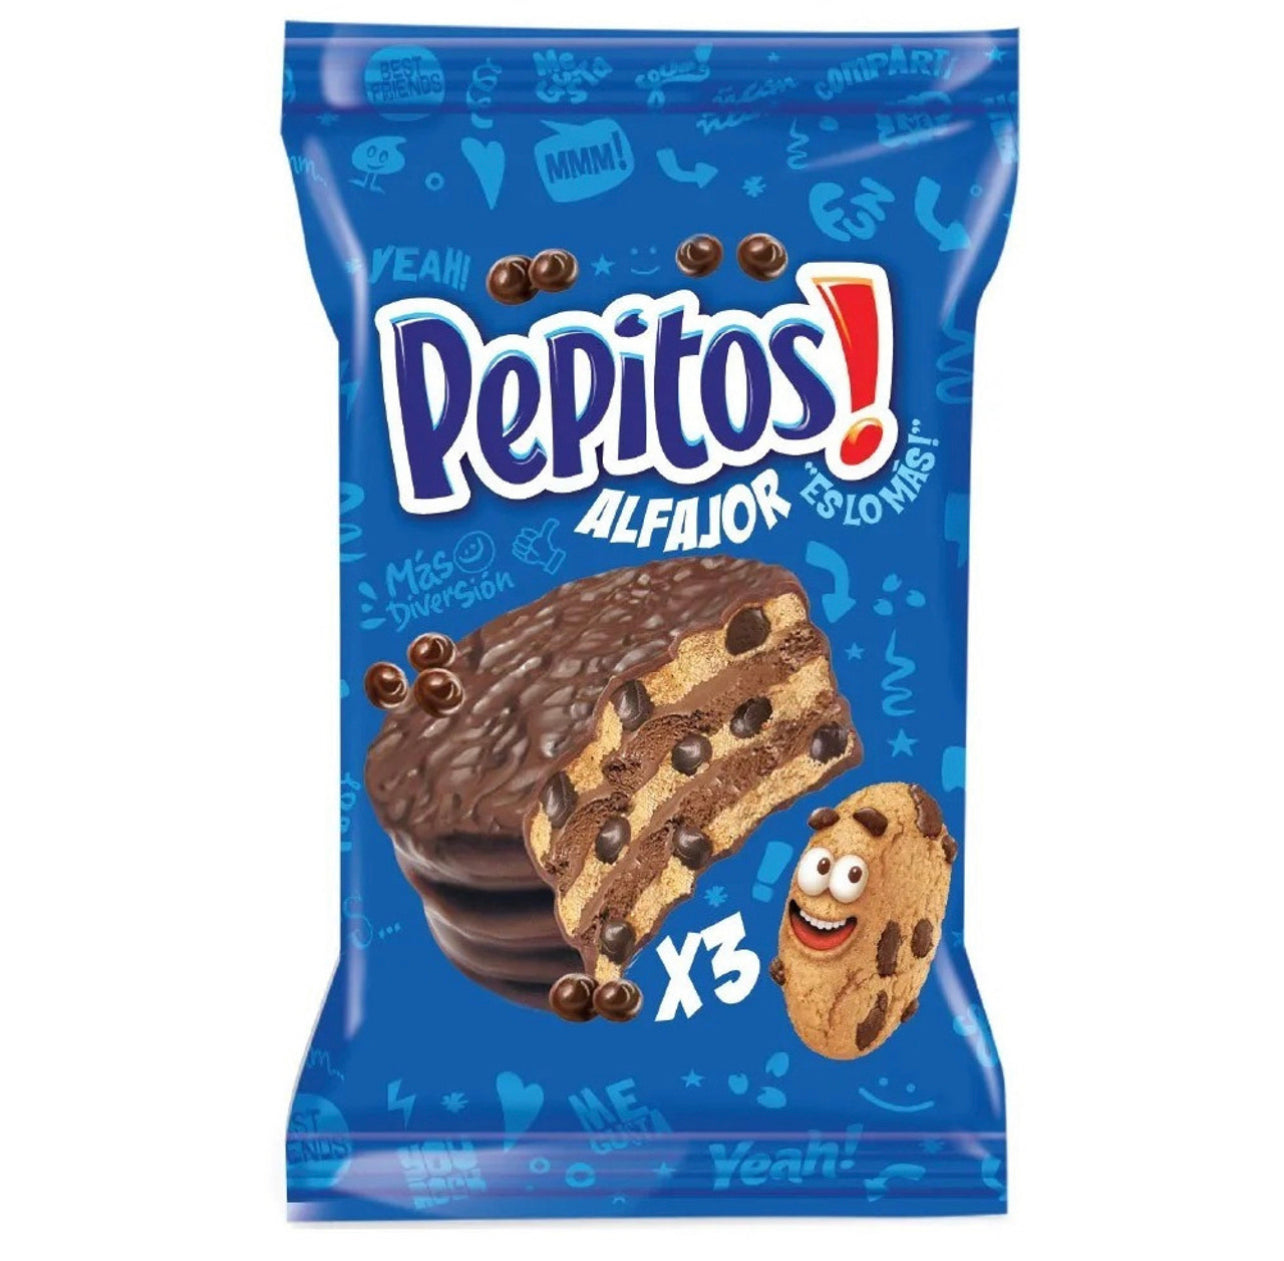 Pepitos Cookie (Argentina)